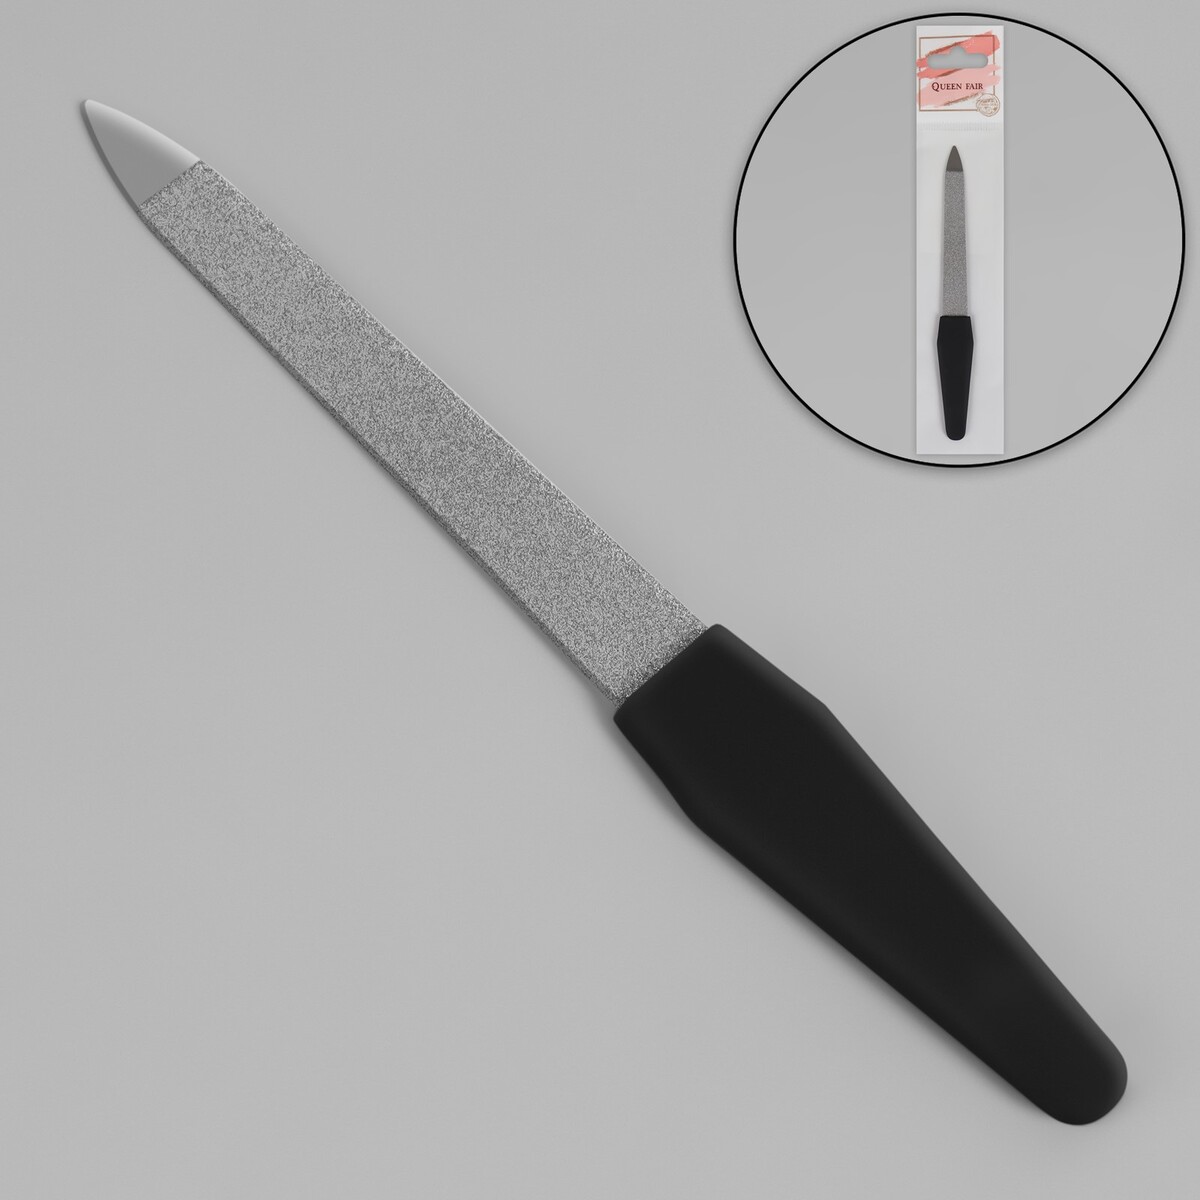 Пилка металлическая для ногтей, прорезиненная ручка, 12 см, цвет серебристый/черный пуходерка без капель прорезиненная ручка 11 х 15 см черно красная